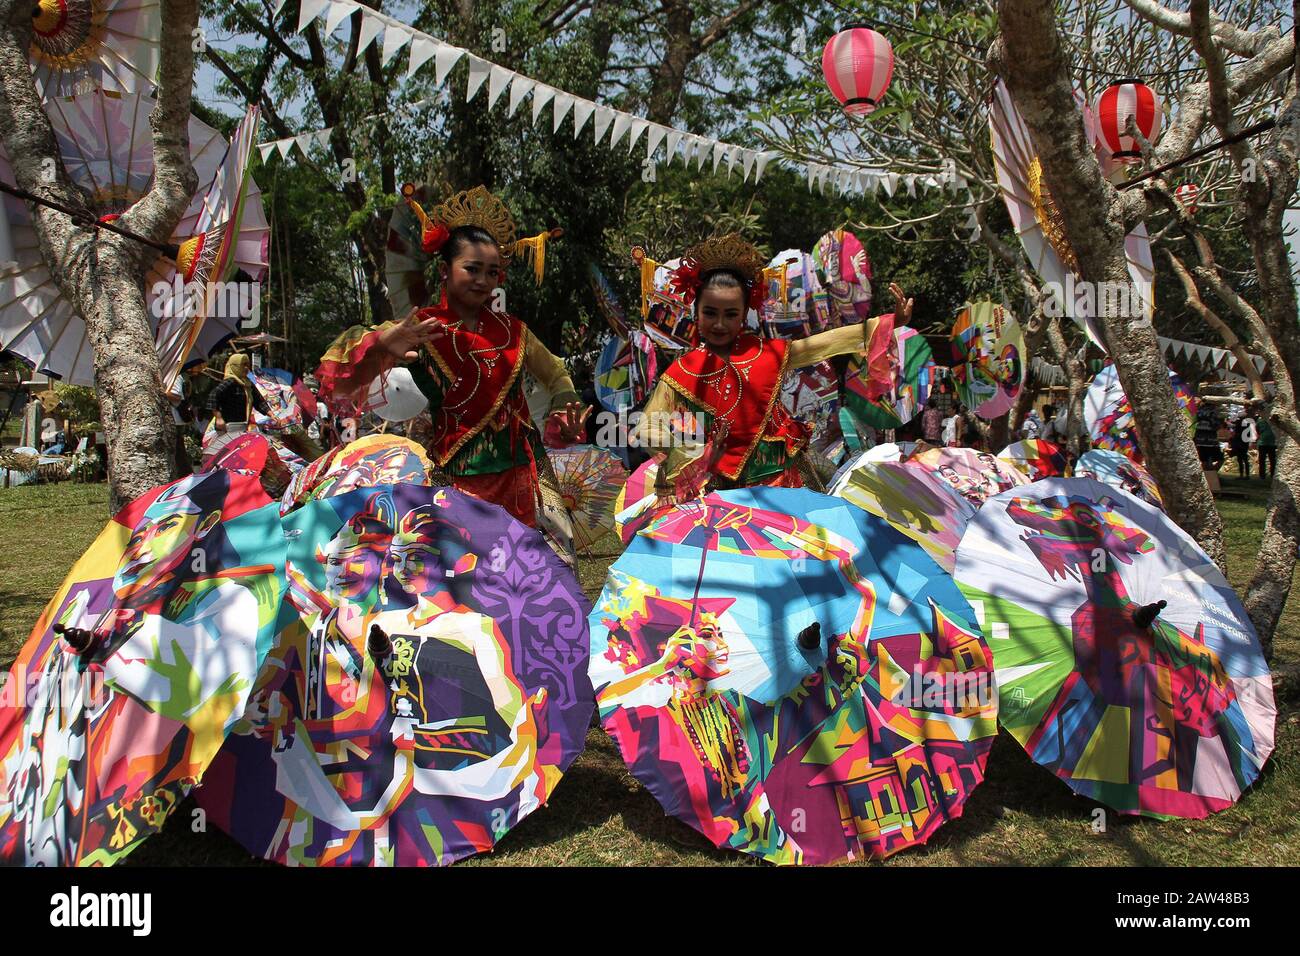 Tänzerinnen und Tänzer spielen den traditionellen Tanz während des Nusantara Umbrella Festivals im Prambanan-Tempel in Yogyakarta, Sonntag, 8. September 2019. Dieses jährliche Dachfestival bietet Tausende von Schirmkreationen aus ganz Indonesien. Der Prambanan-Tempel wurde ausgewählt, weil er historischen Wert enthält und von der UNESCO als Kulturerbe Indonesiens anerkannt wurde. Stockfoto